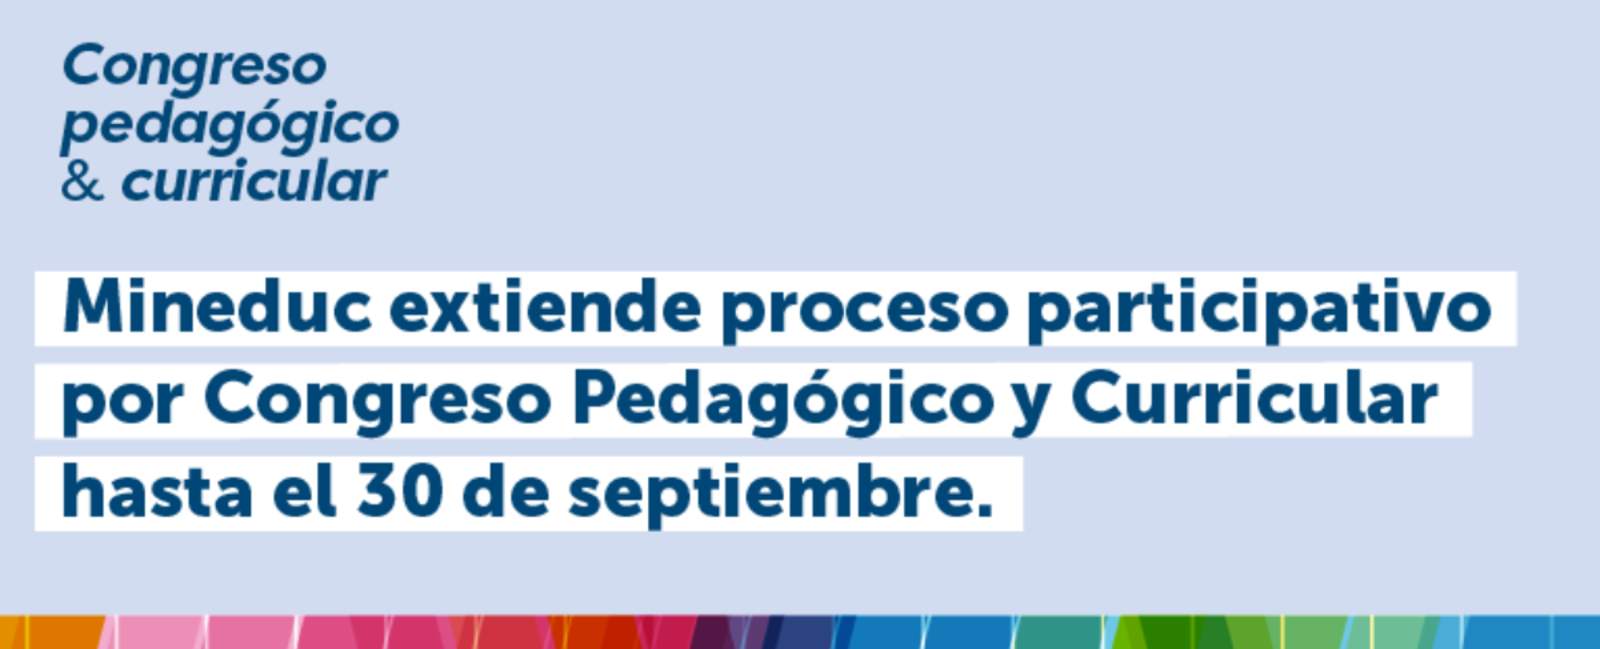 Mineduc extiende proceso participativo por Congreso Pedagógico y Curricular hasta el 30 de septiembre